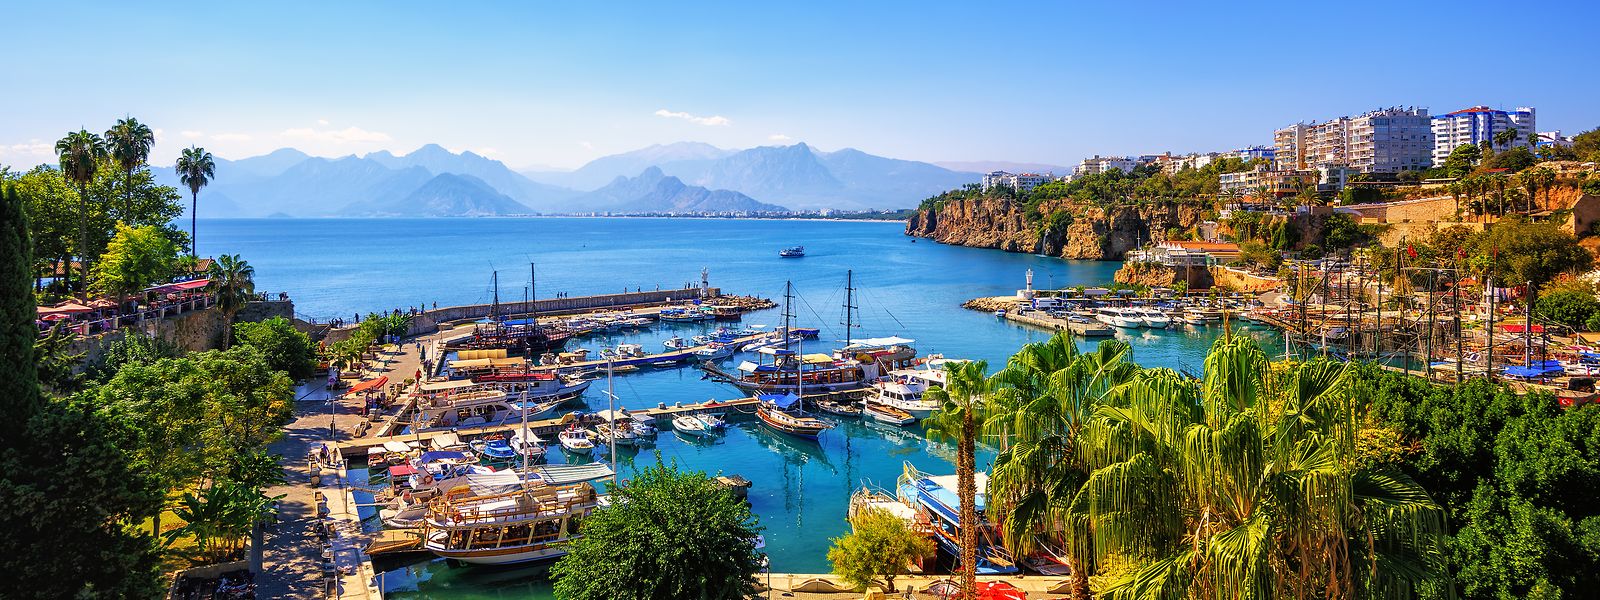 Die türkische Mittelmeermetropole Antalya ist eine geeignete Destination für Sparfüchse. 